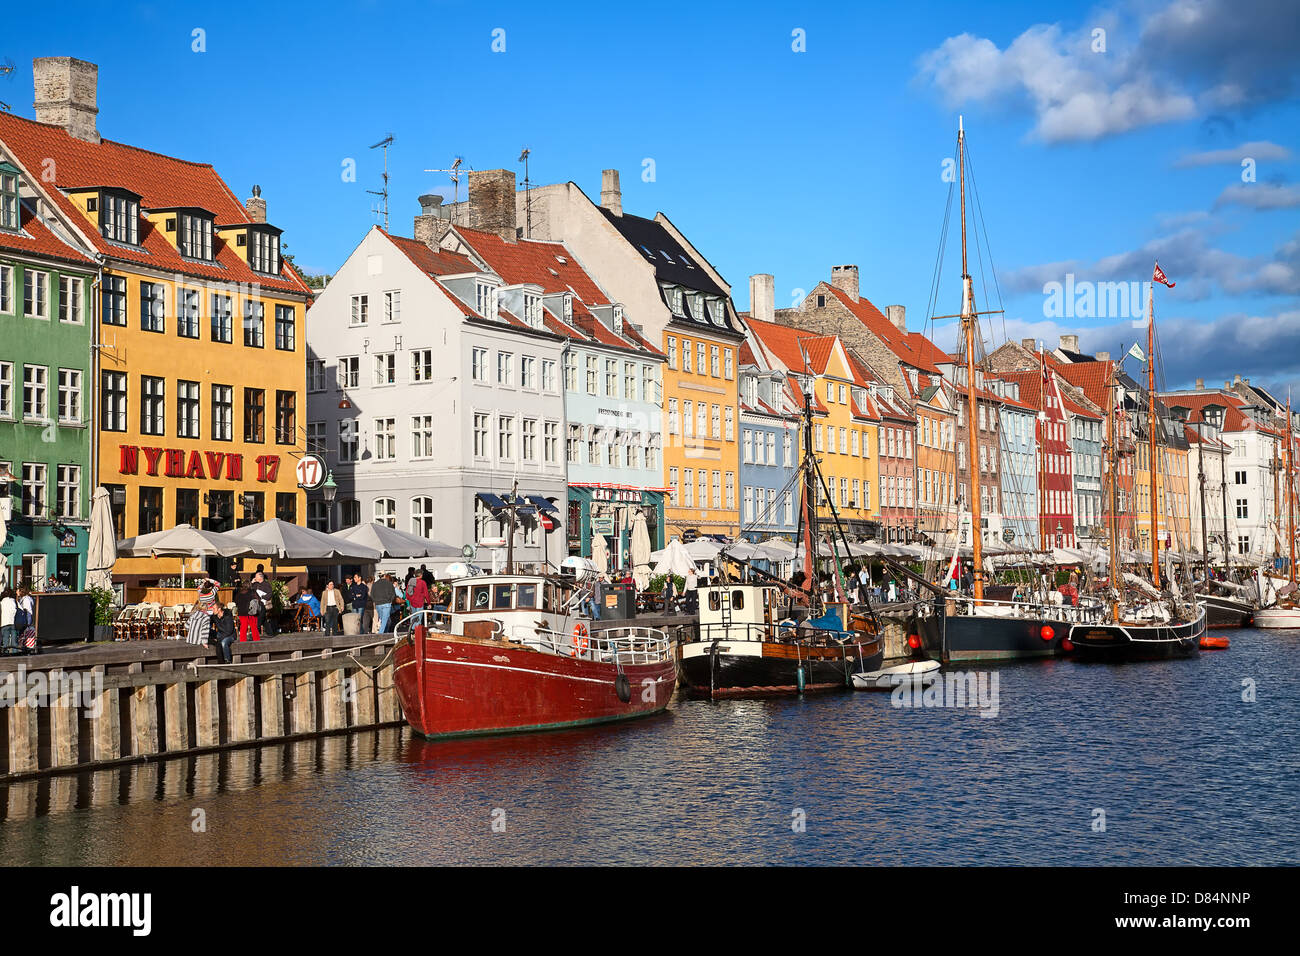 COPENHAGEN, DENMARK - AUGUST 25: unidentified people enjoying sunny ...